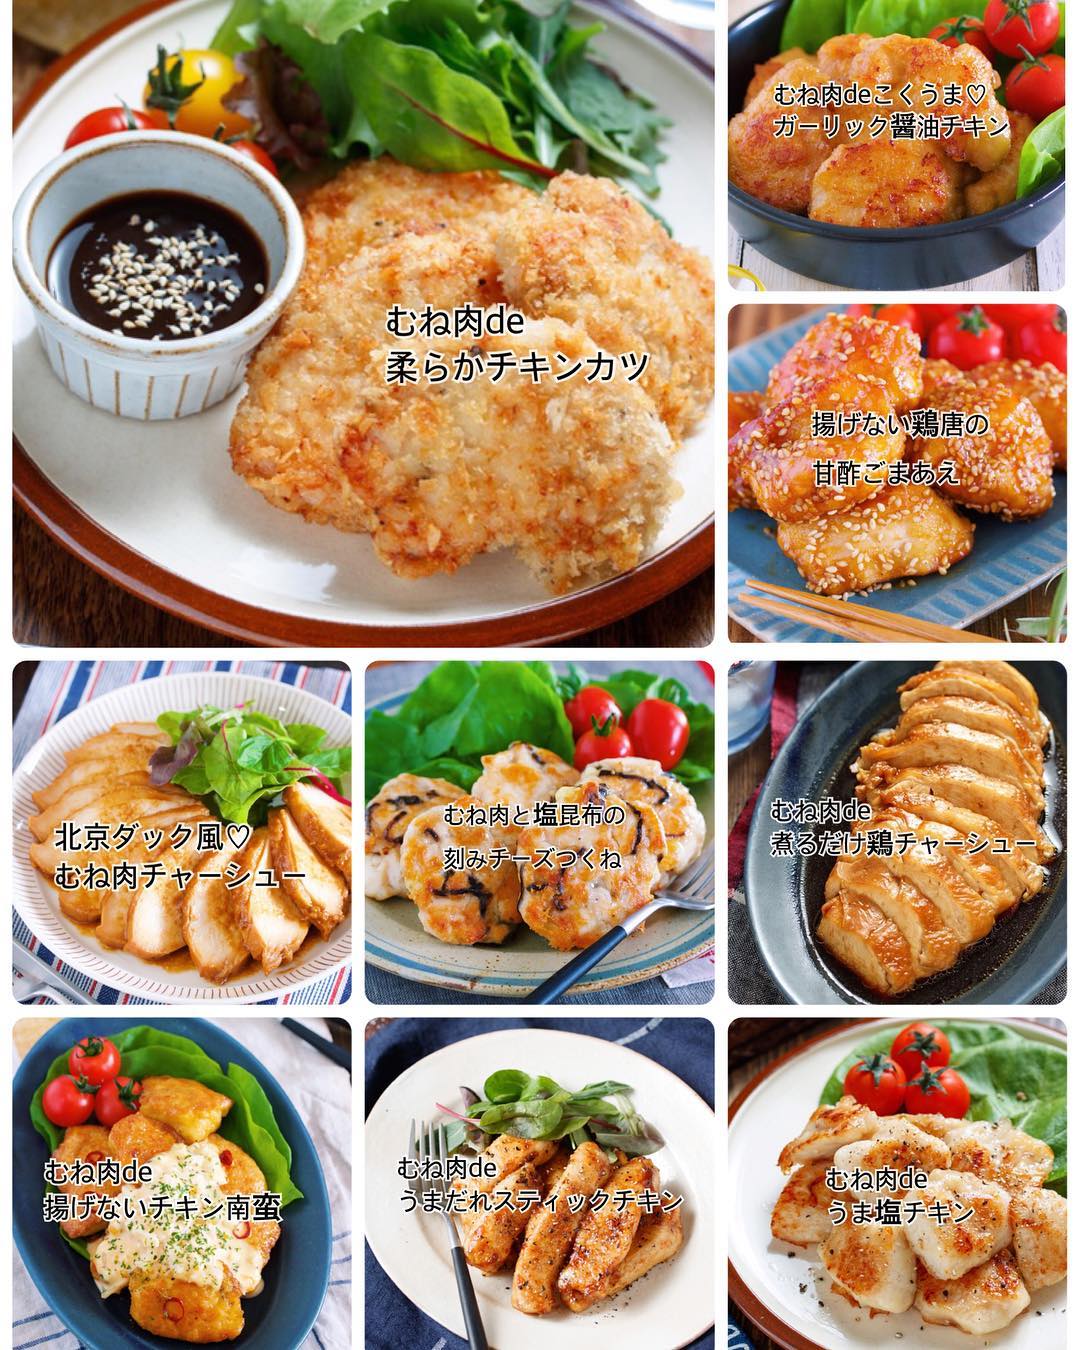 Yuu 冷めても美味しい お弁当に使える 鶏むね肉 を使った簡単おかず10選 インスタ内検索は 鶏むね肉を使った簡単おかず10選 で お知らせ Ciao Nihon